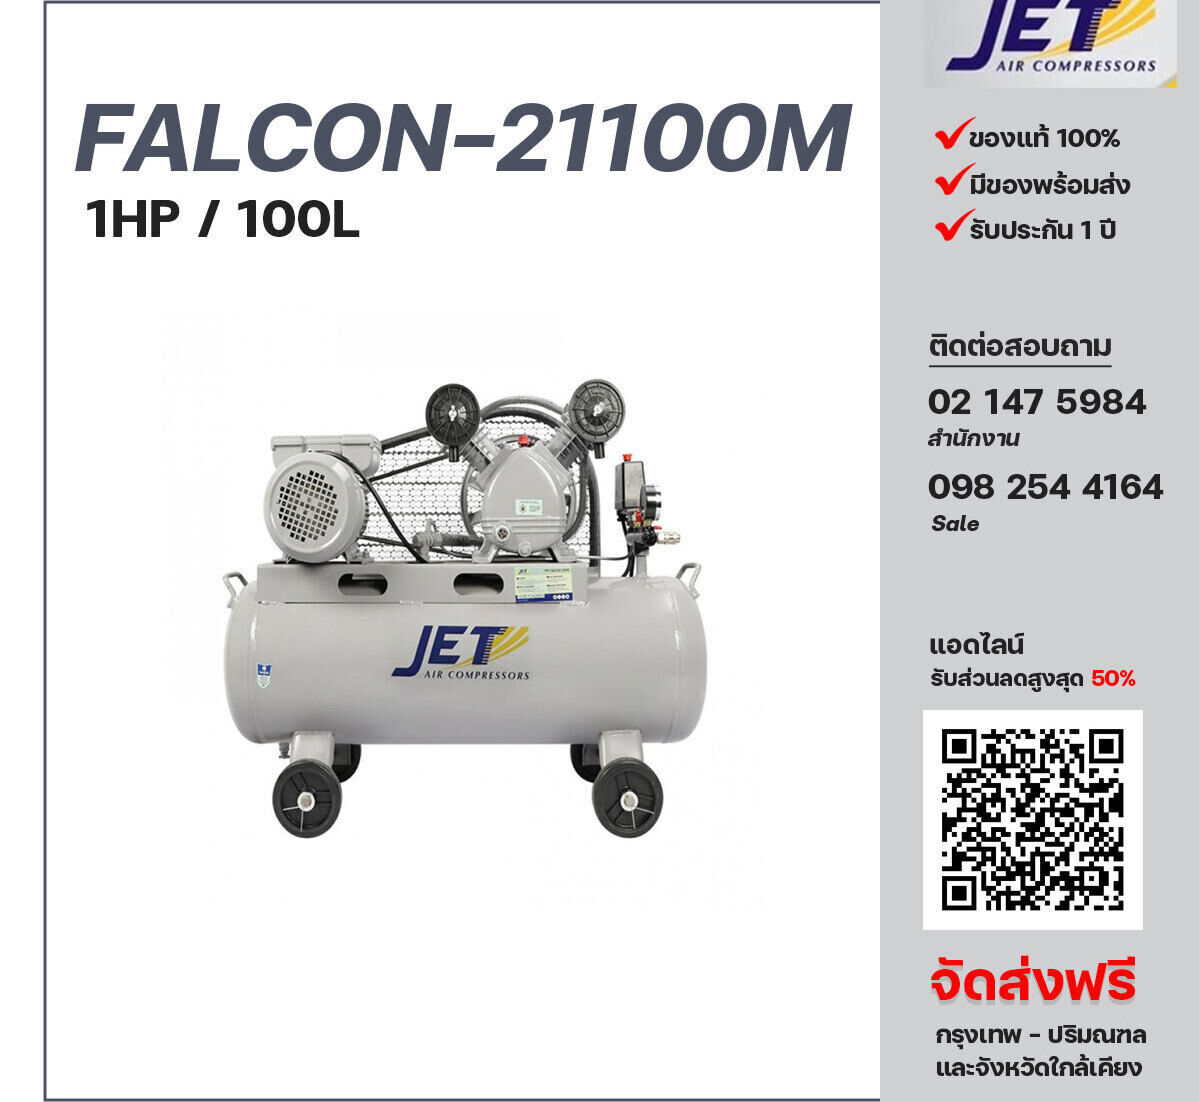 ปั๊มลมสายพาน JET ขนาด 1 แรงม้า รุ่น FALCON-21100M ไฟฟ้า 220V มอเตอร์ 2 แรงม้า ไฟฟ้า 220 โวลต์ ถังเก็บลมขนาด 100 ลิตร  รับประกัน 1 ปี ตามเงื่อนไขบริษัทผู้ผลิต